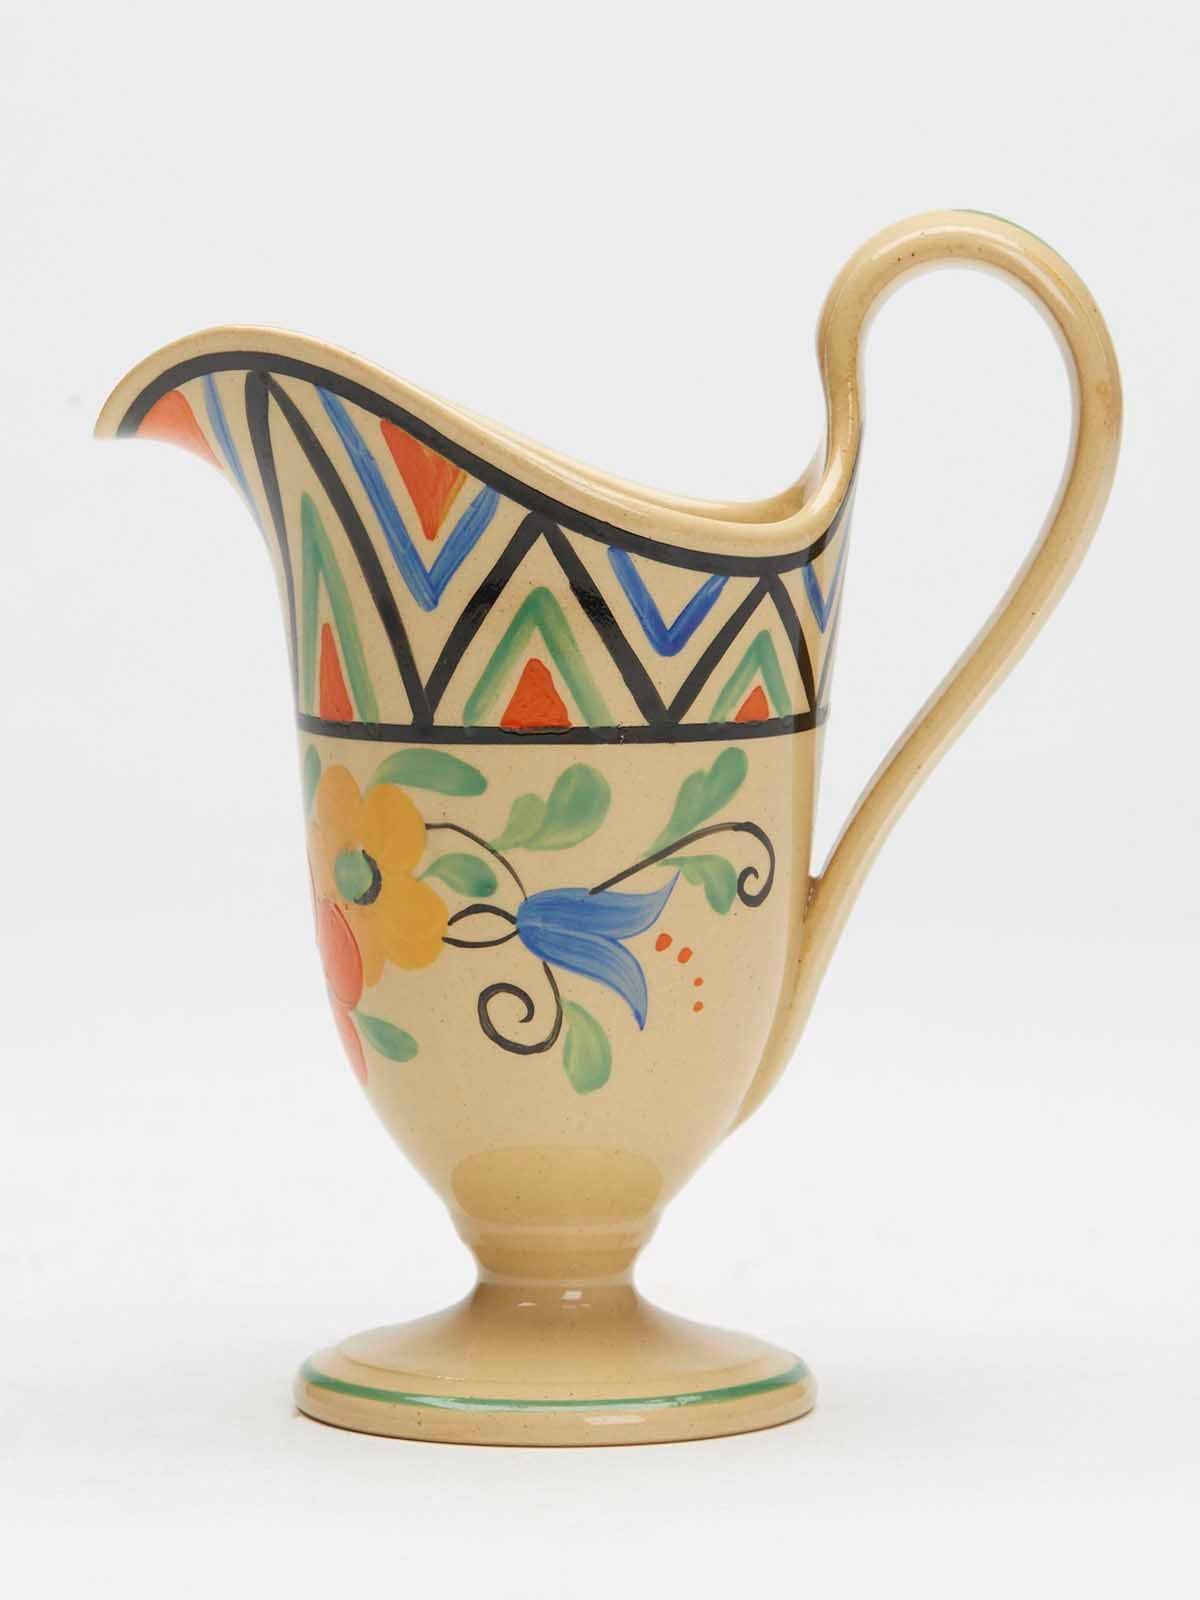 Une très belle et élégante cruche à crème Art déco Wedgwood peinte de motifs floraux, réalisée par le célèbre designer Millicent (Millie) Jane Taplin (britannique, 1902-1980) et datant d'environ 1930. 

Millie était une peintre en céramique renommée